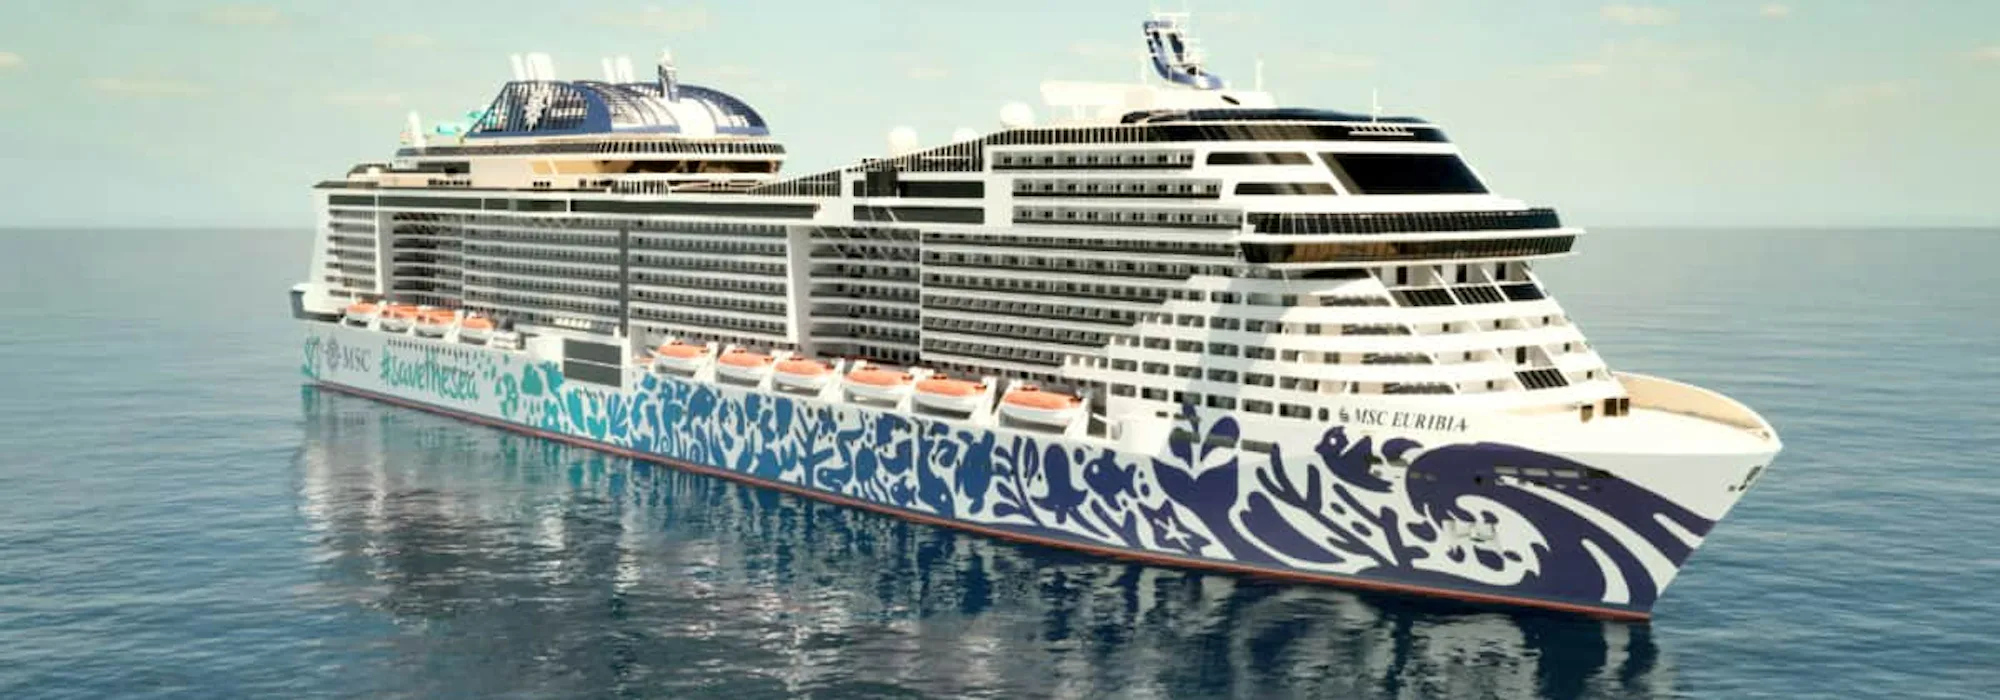 MSC Cruises - MSC Euribia